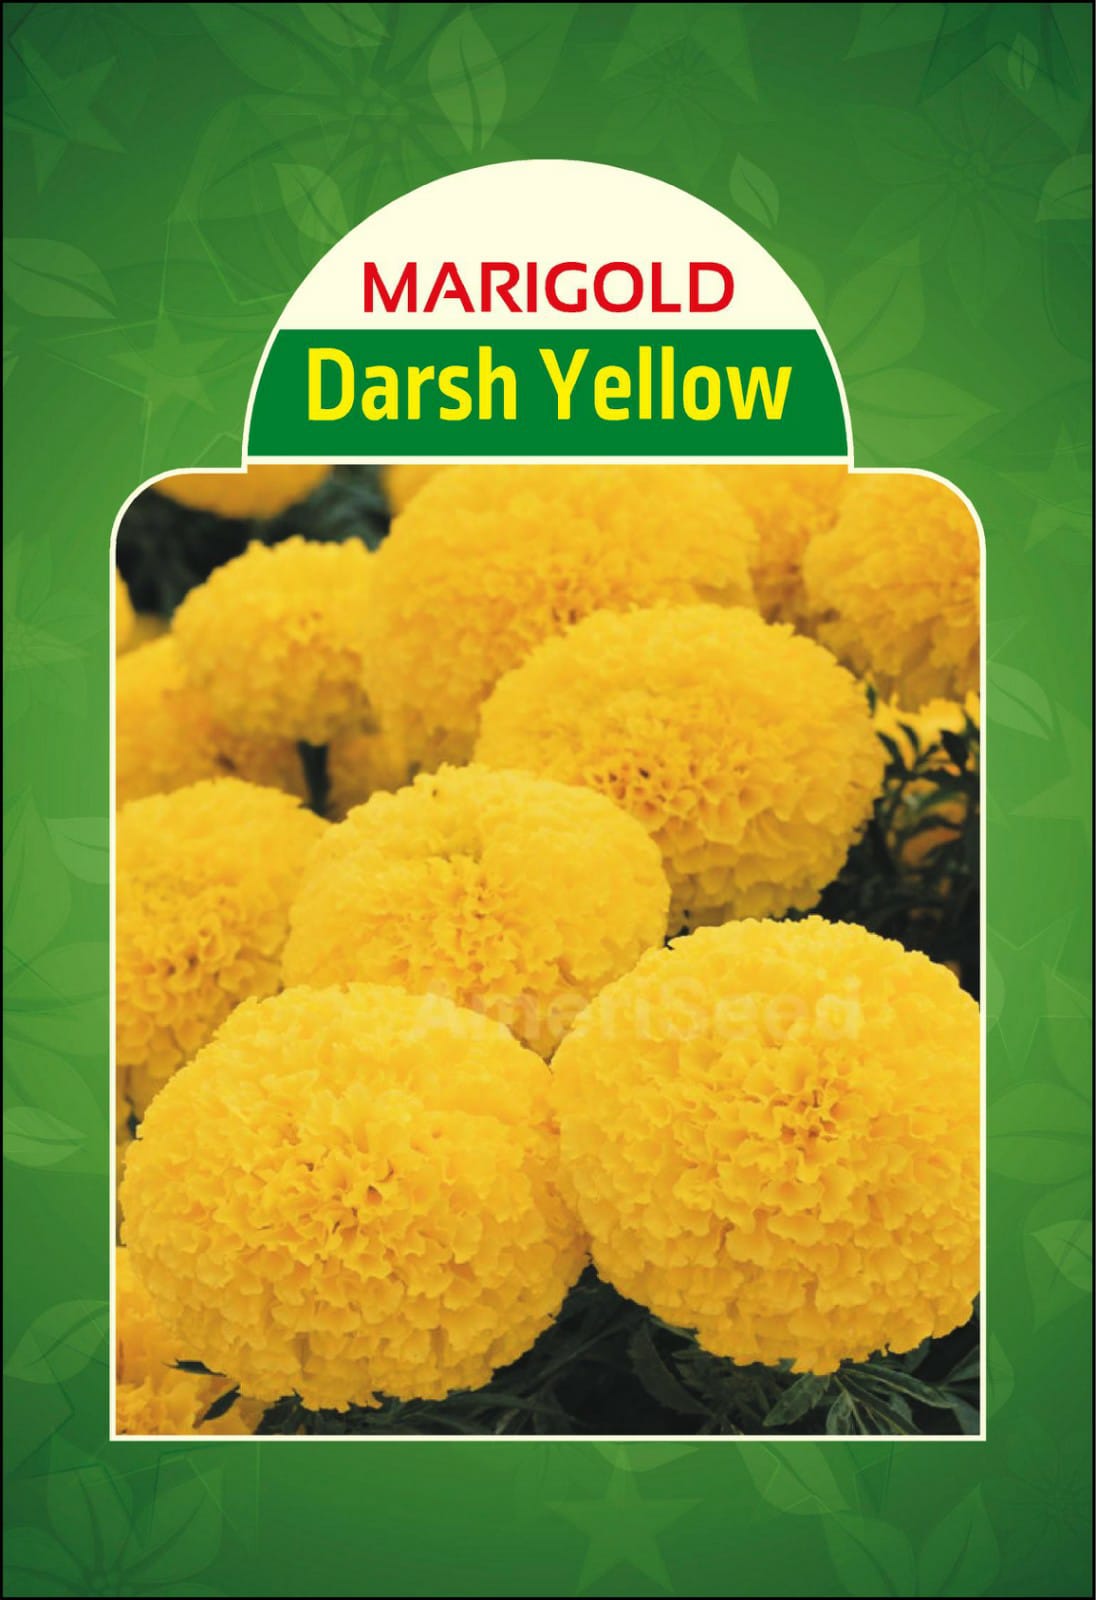 Marigold Darsh Yellow